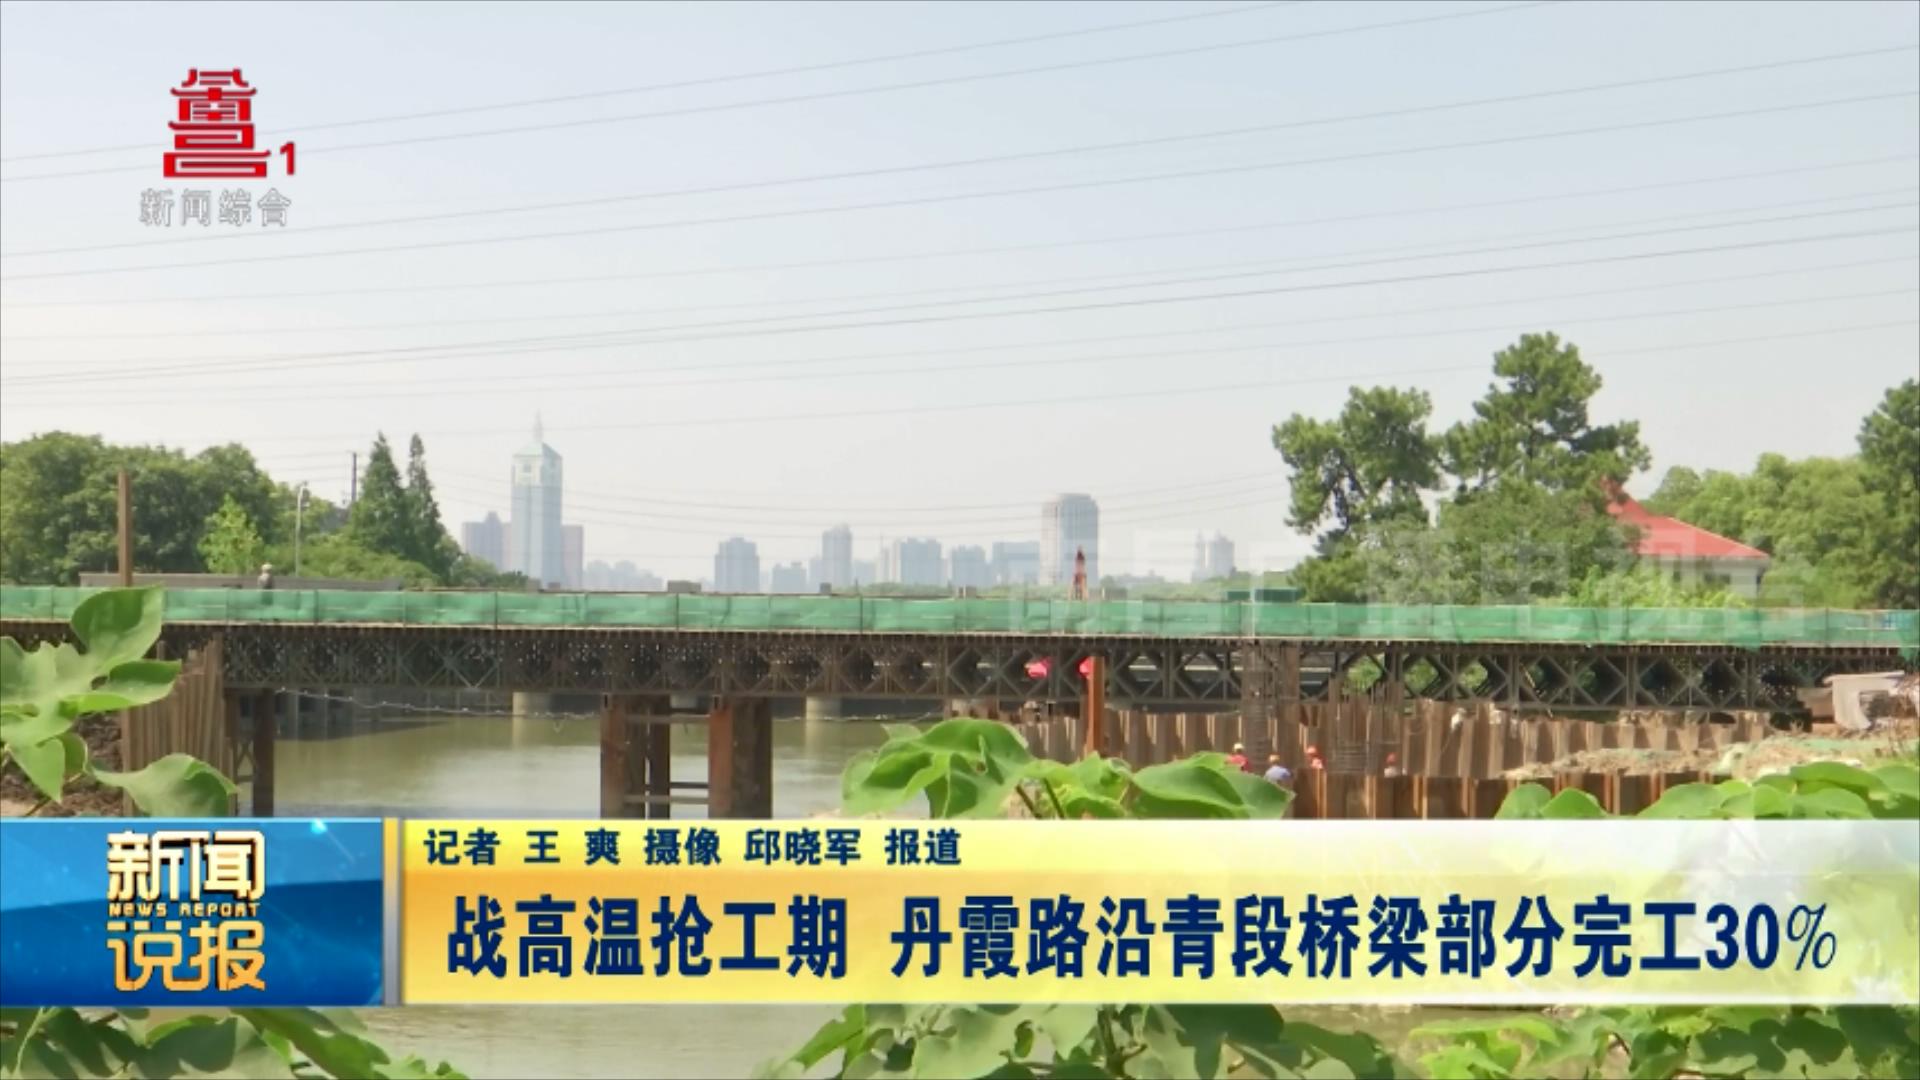 【江西是个好地方——天下英雄城】战高温抢工期 丹霞路沿青段桥梁部分完工30%